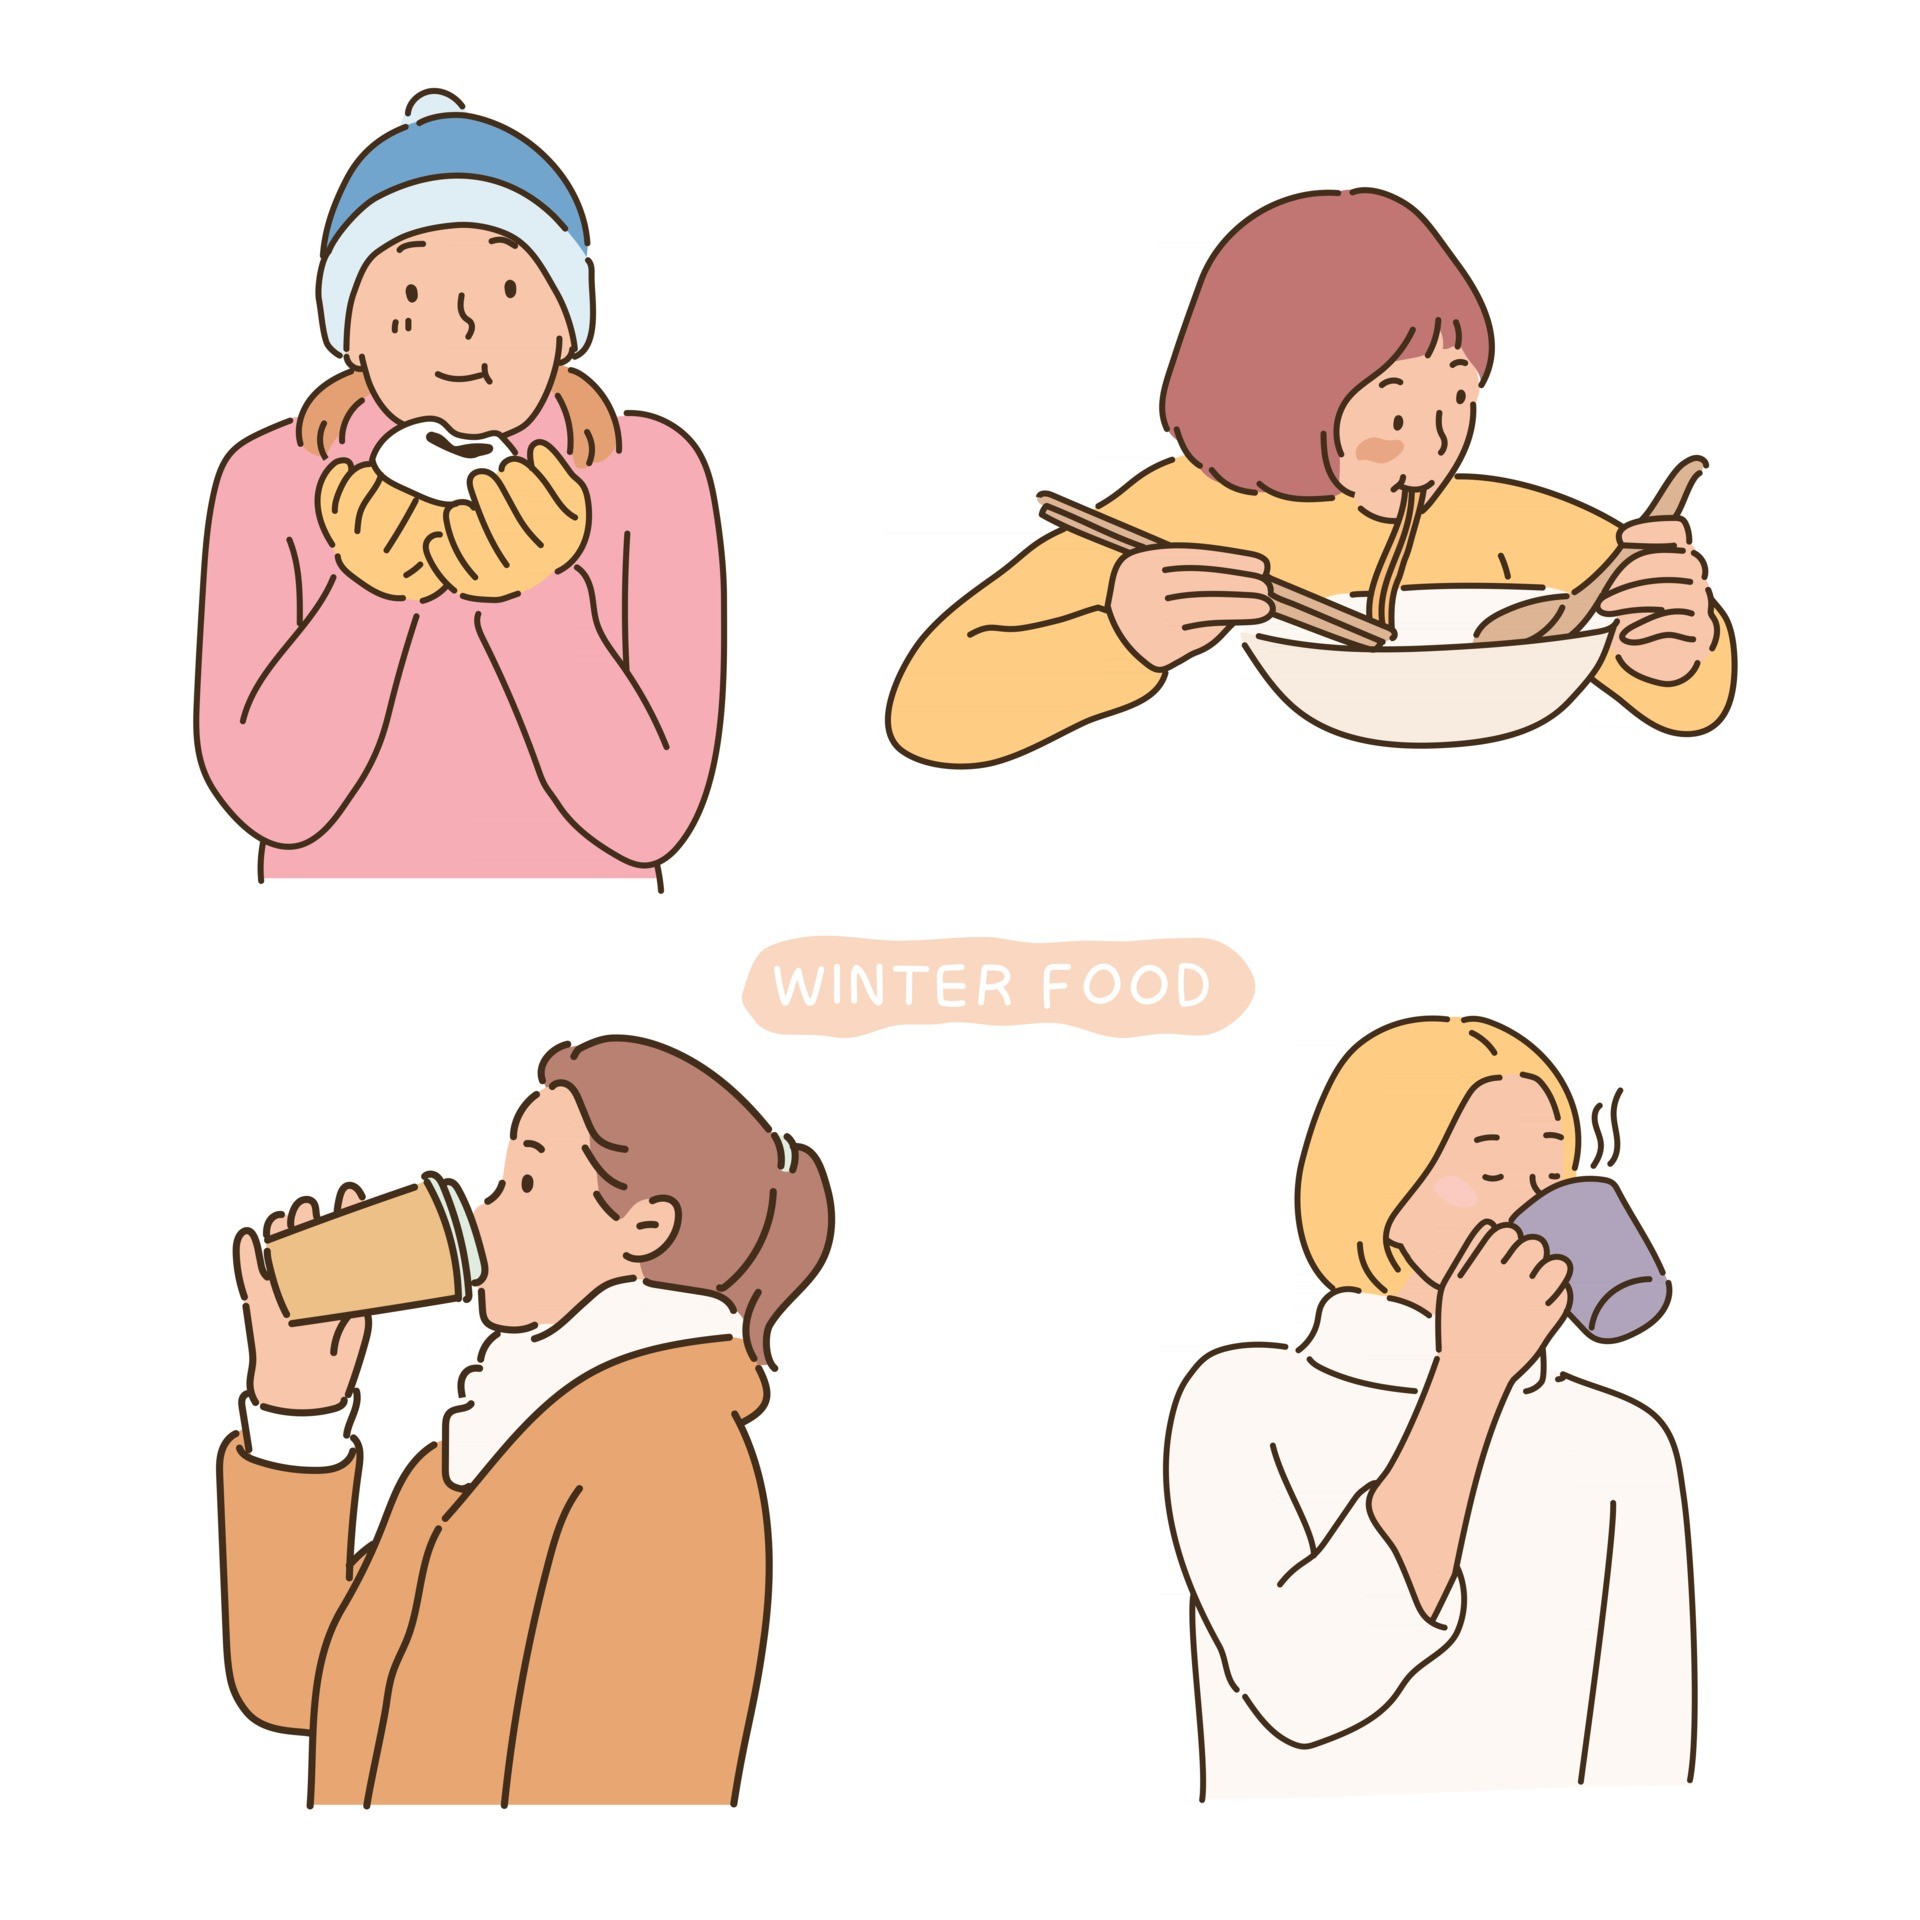 吃温暖冬季食物的人们插图0